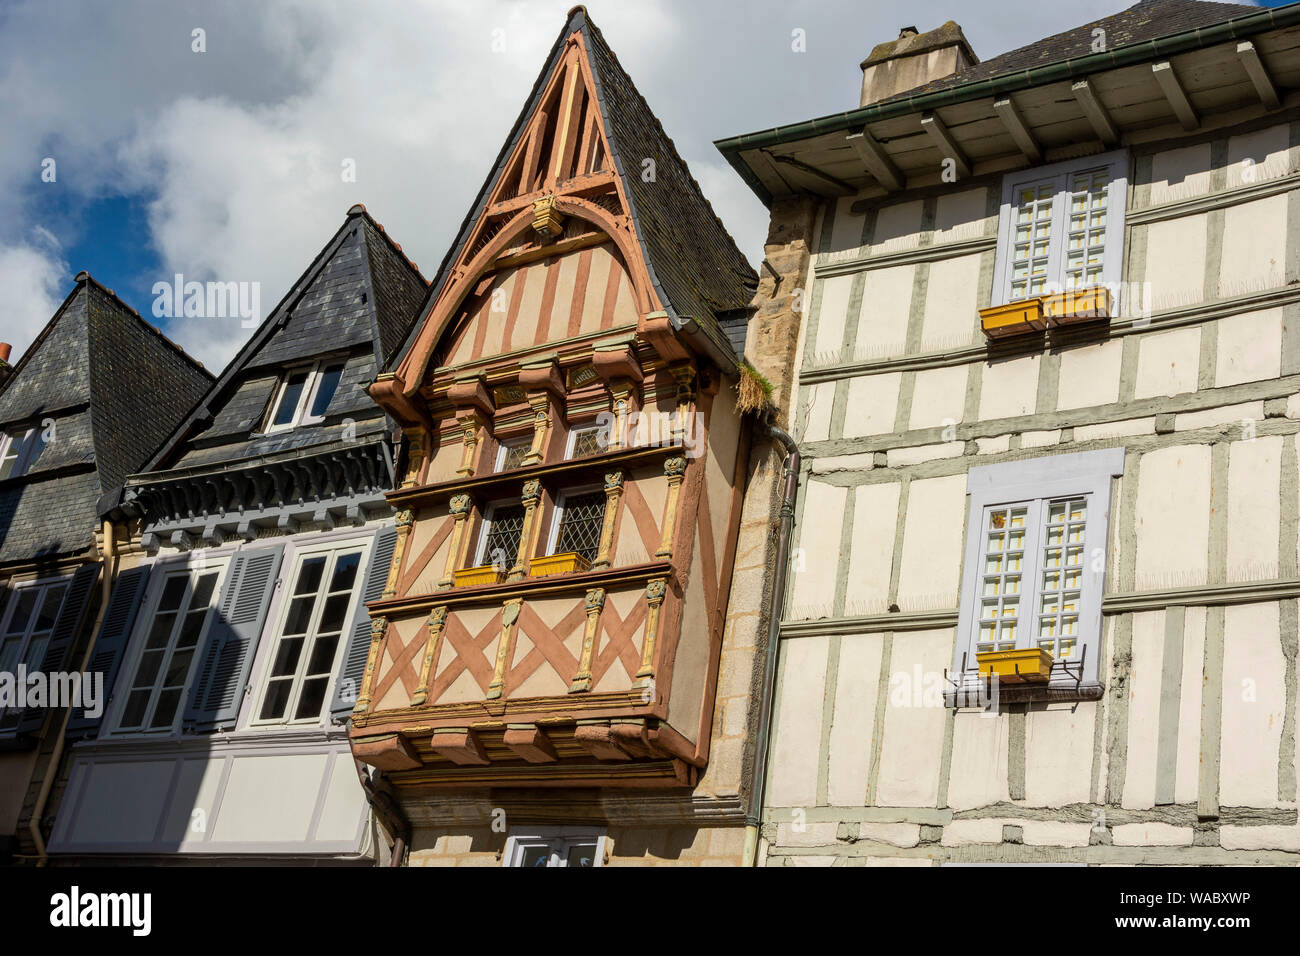 Quimper. Maisons à colombages dans la ville médiévale. Département du Finistère. Bretagne. France Banque D'Images